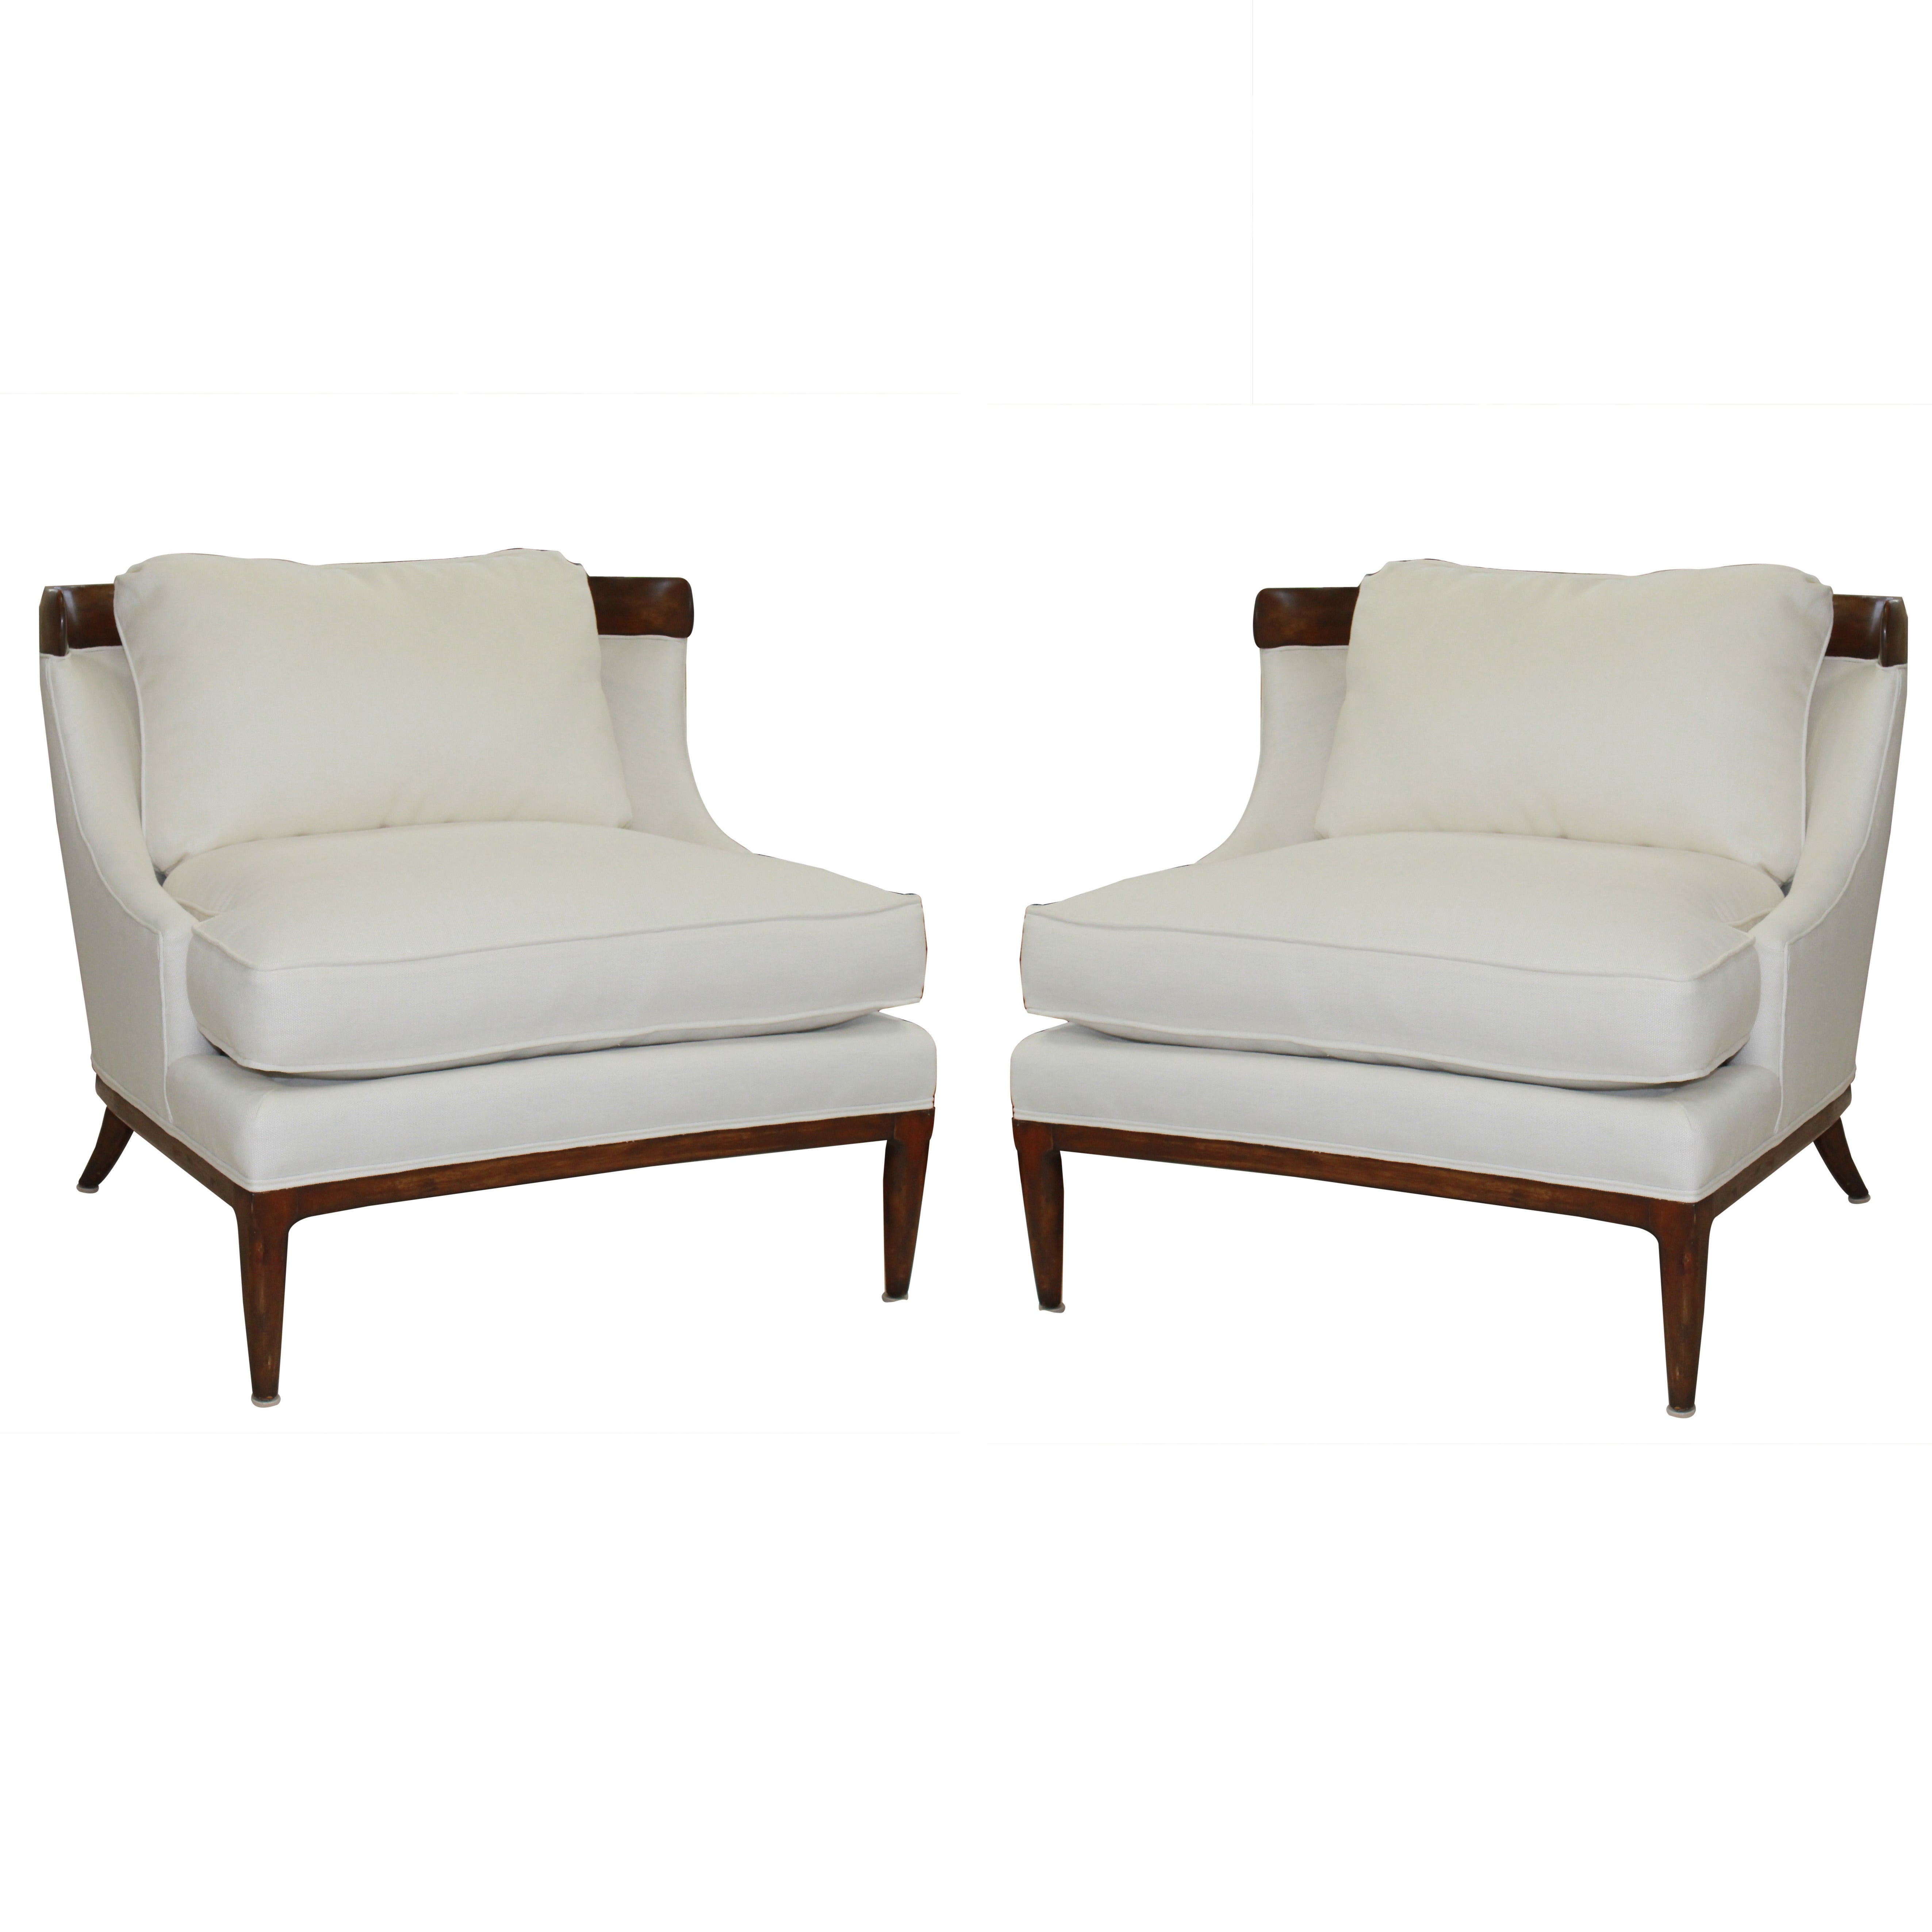 Erwin-Lambeth White Linen Chairs